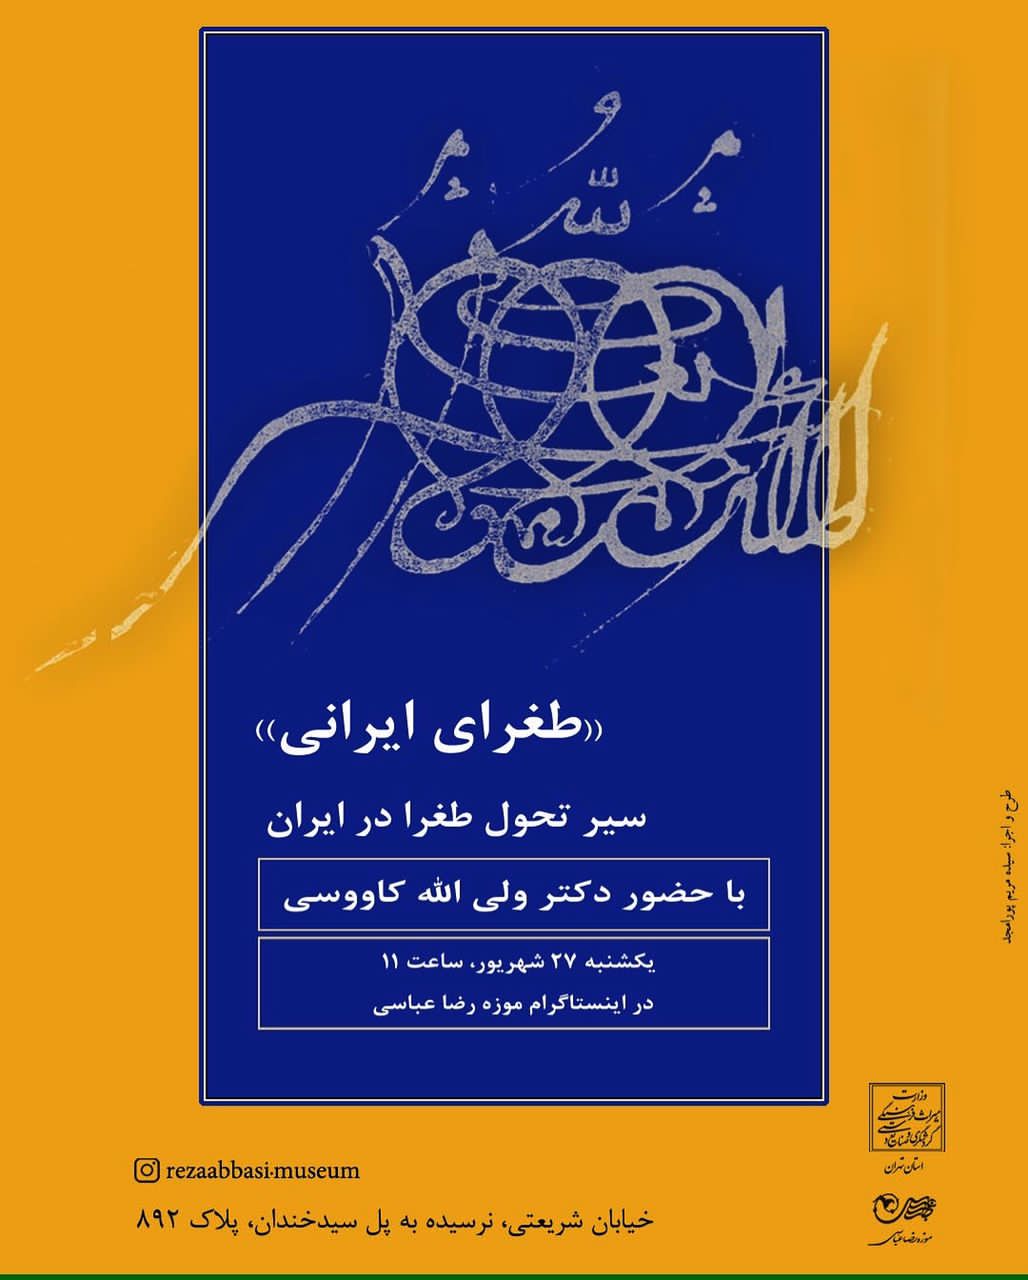 نشست تخصصی سیر تحول طغرا در ایران در موزه رضاعباسی برگزار شد